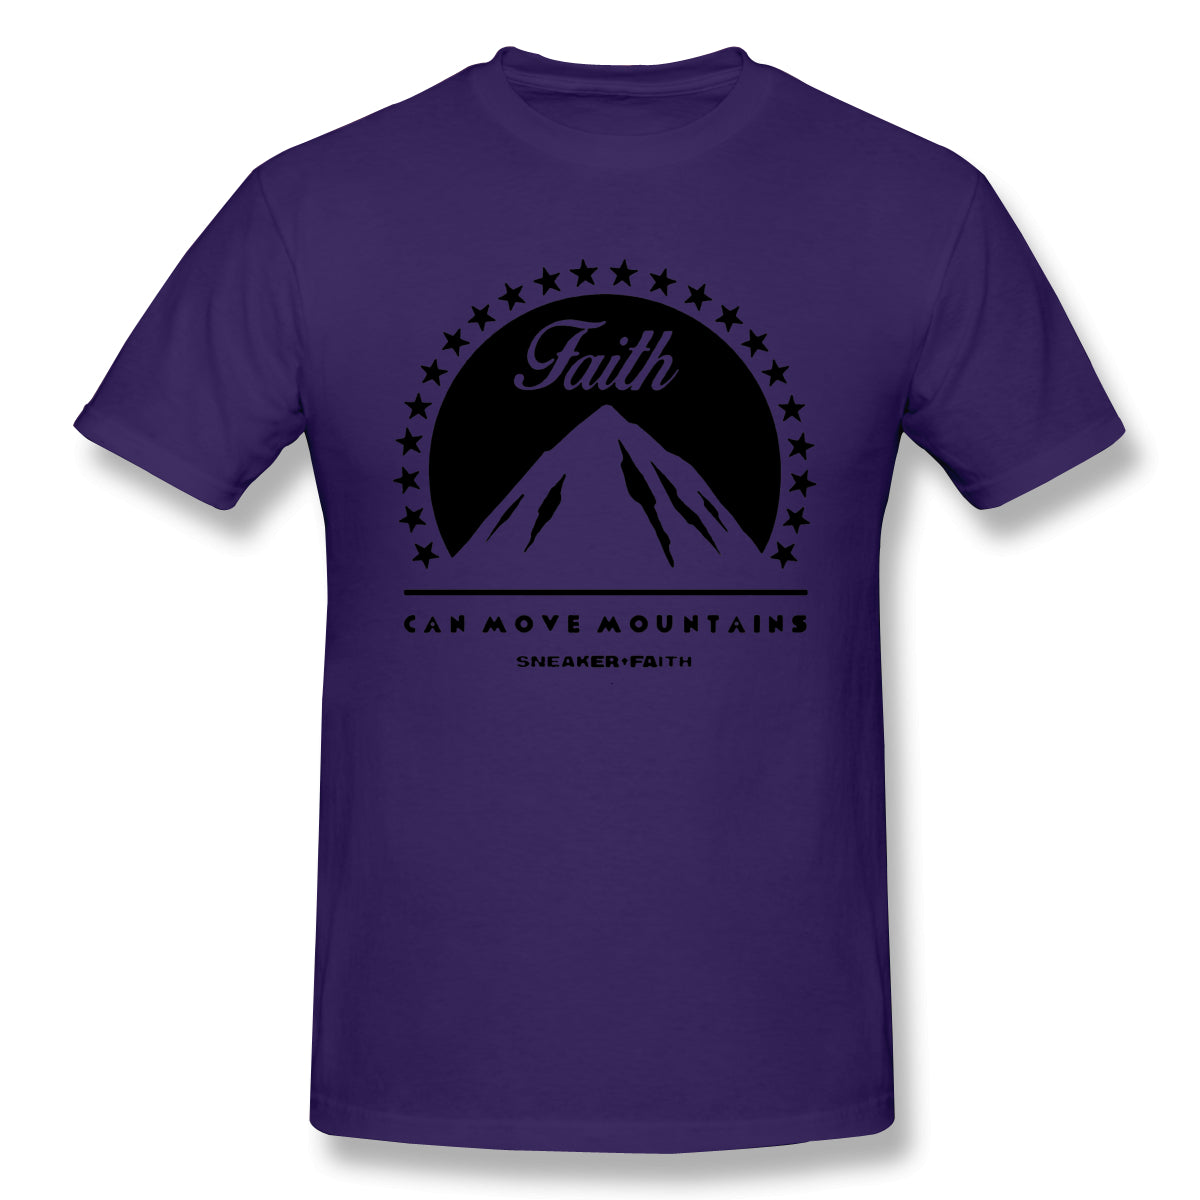 Air Jordan 1 Court Purple 1s Sneaker Tee Faith Can Move Mountains Shirt For Man